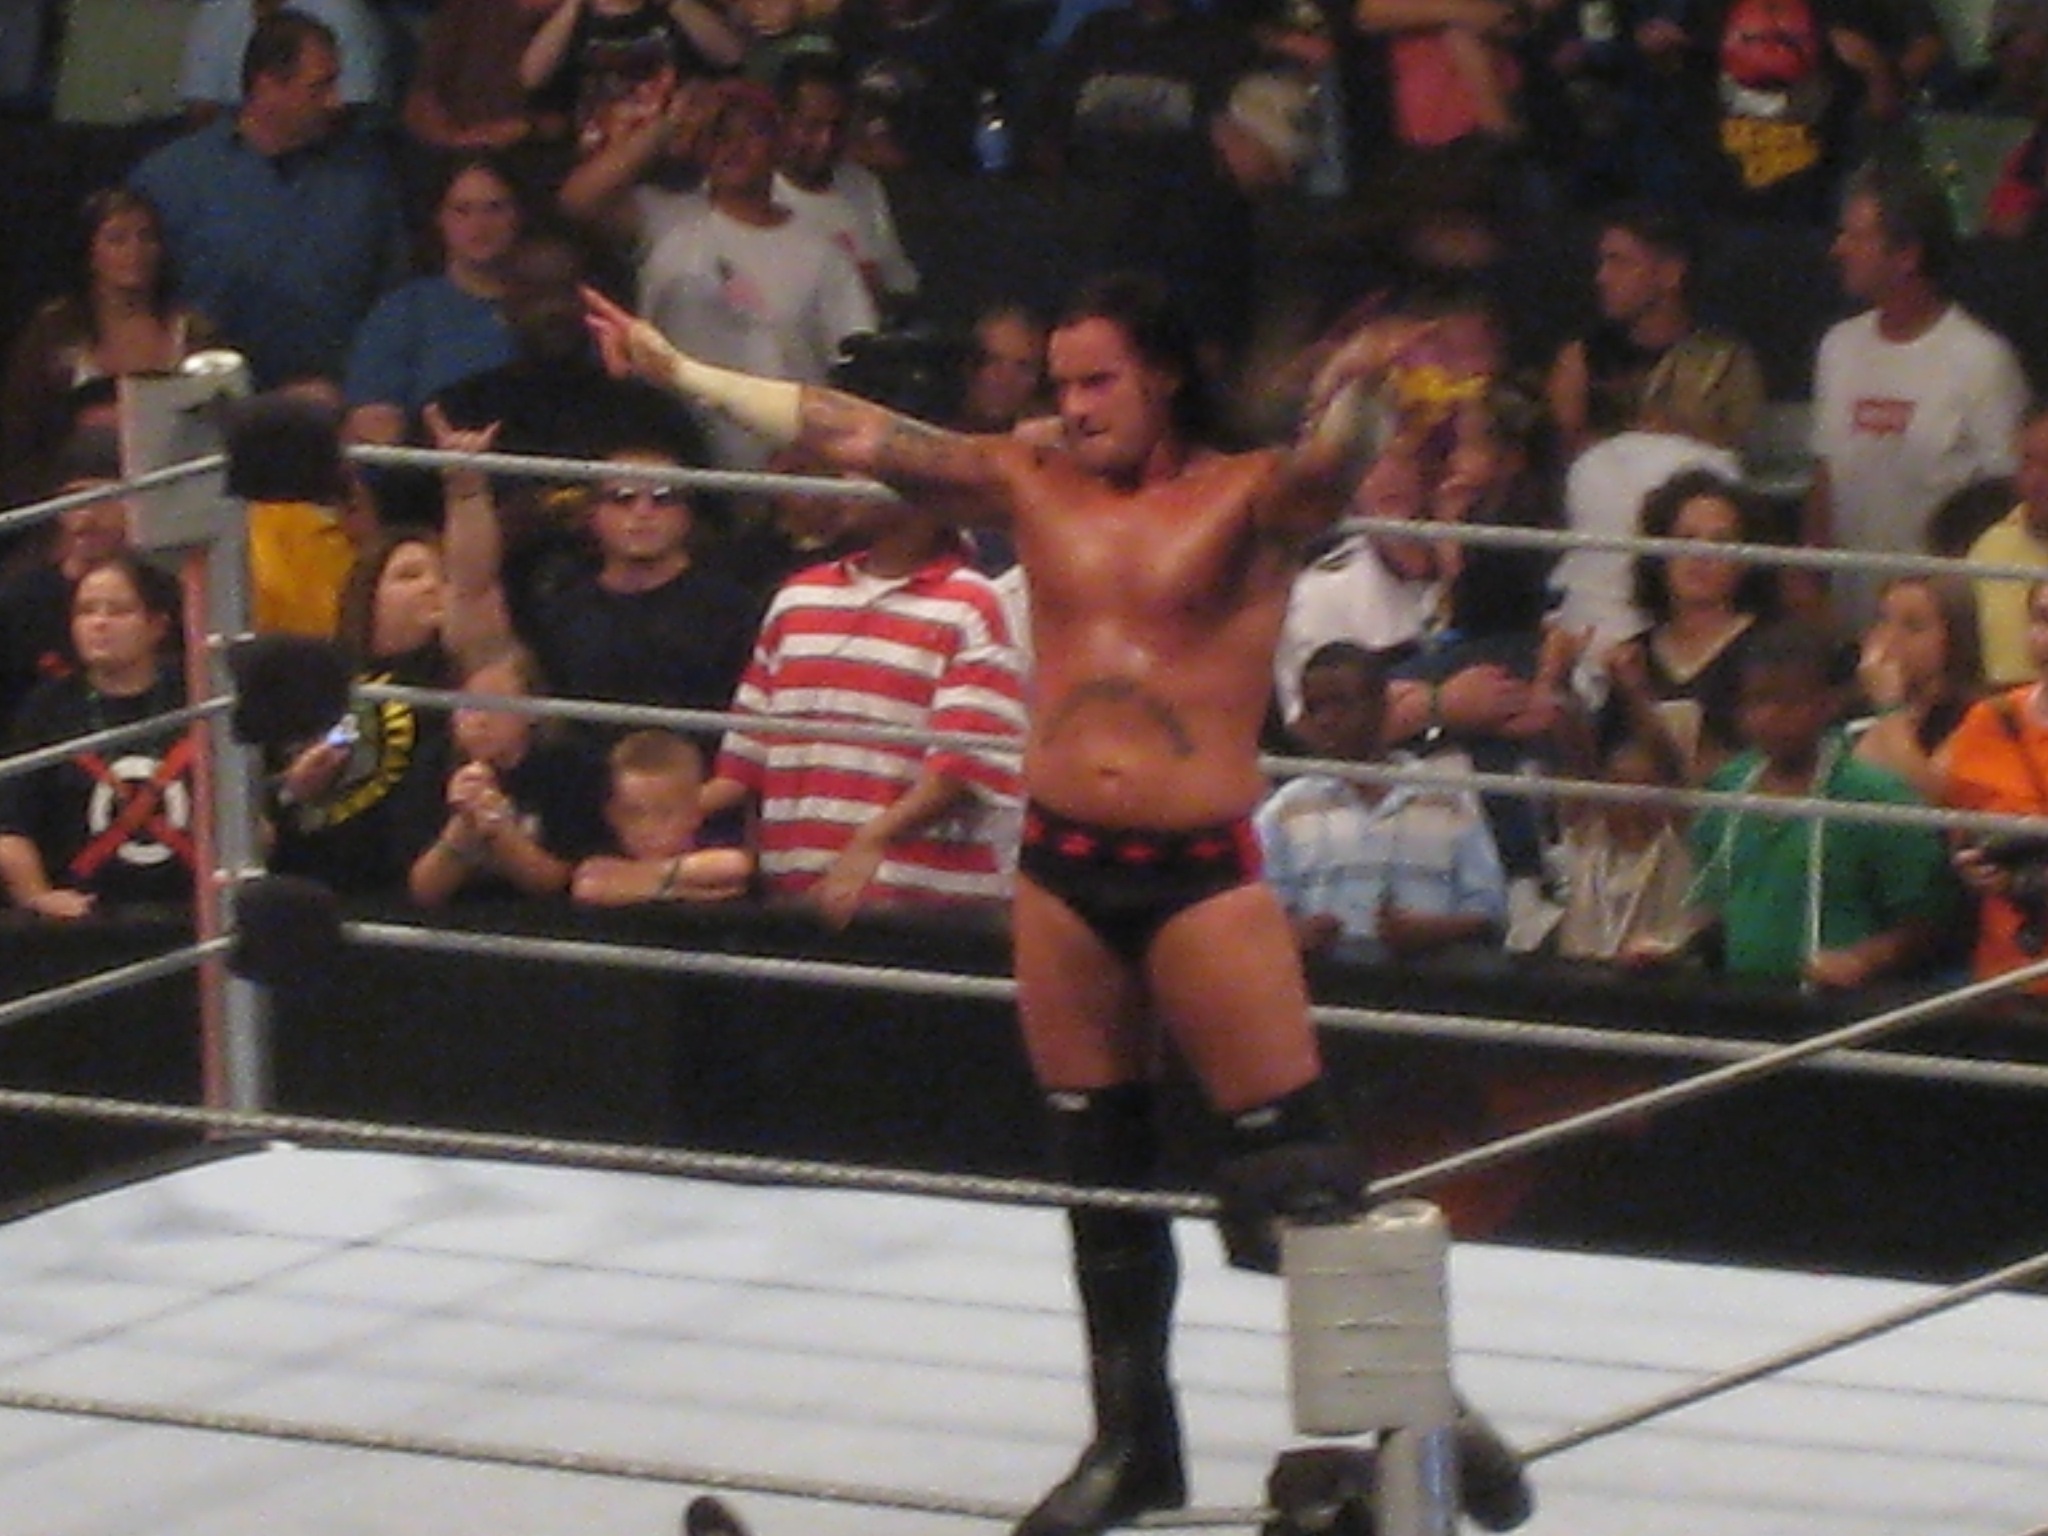 File:WWE Champion CM Punk.jpg - Wikipedia